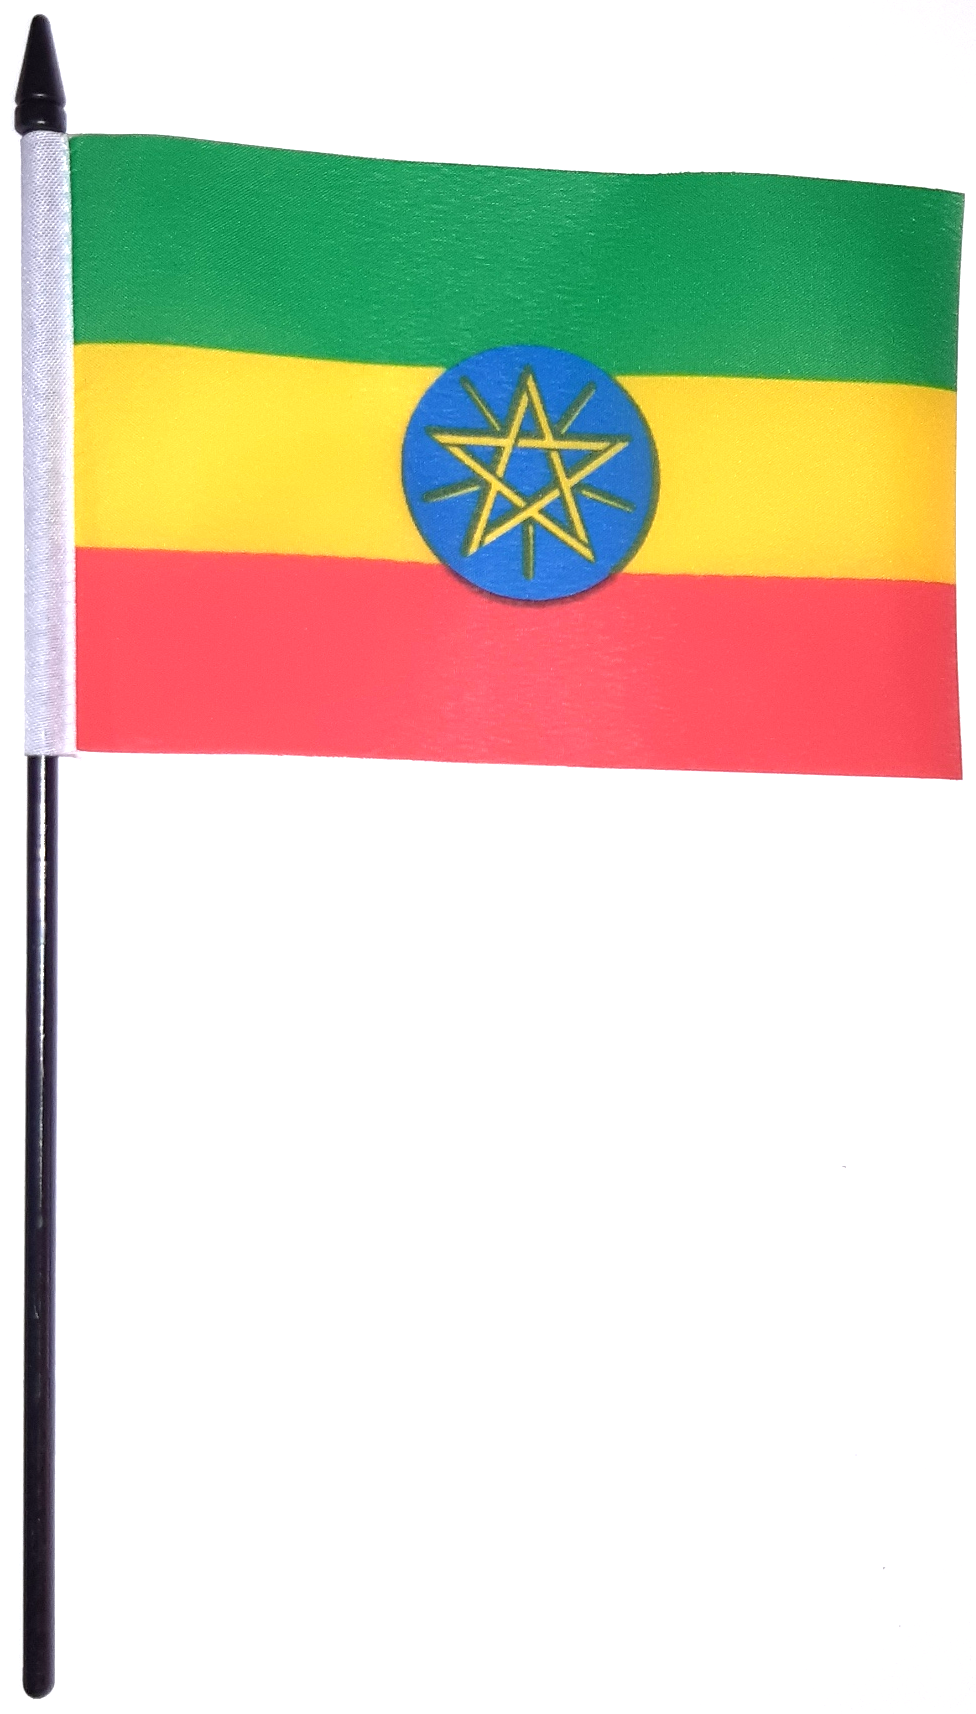 ETIOPIEN HANDFLAGGA MED PENTAGRAM 15X10CM